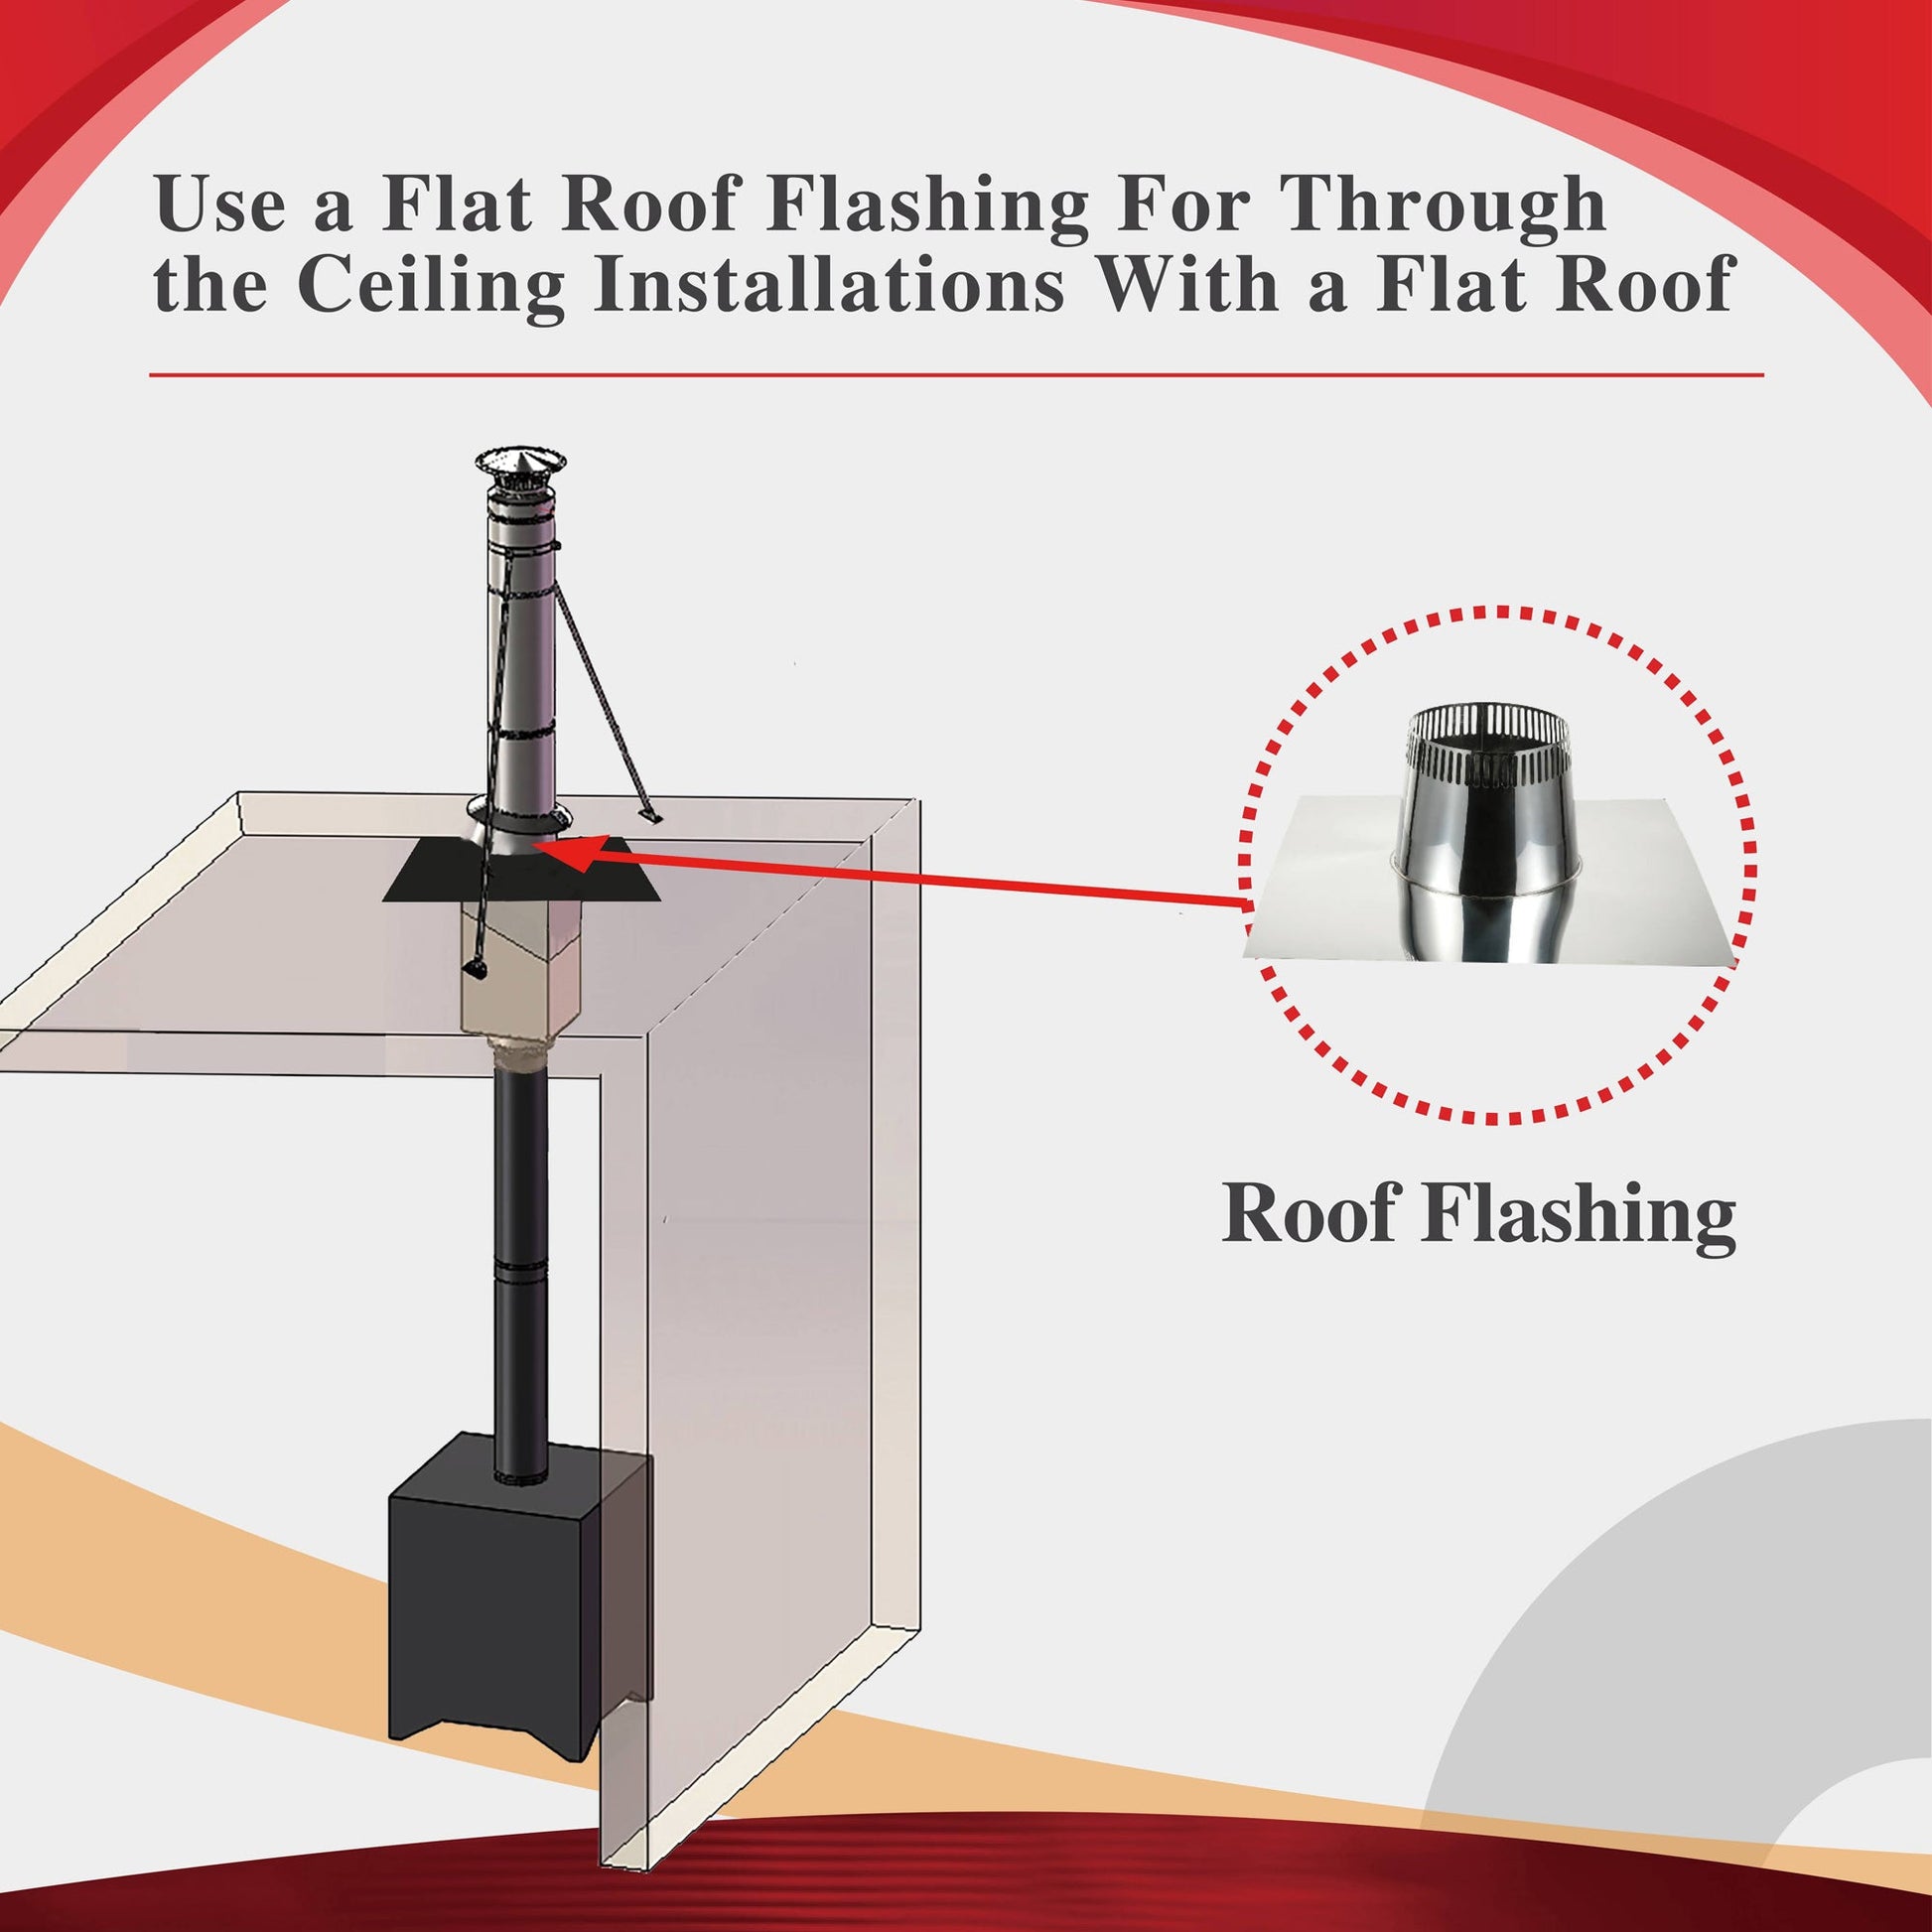 Flat Roof Flashing for 6" Inner Diameter Chimney Pipe